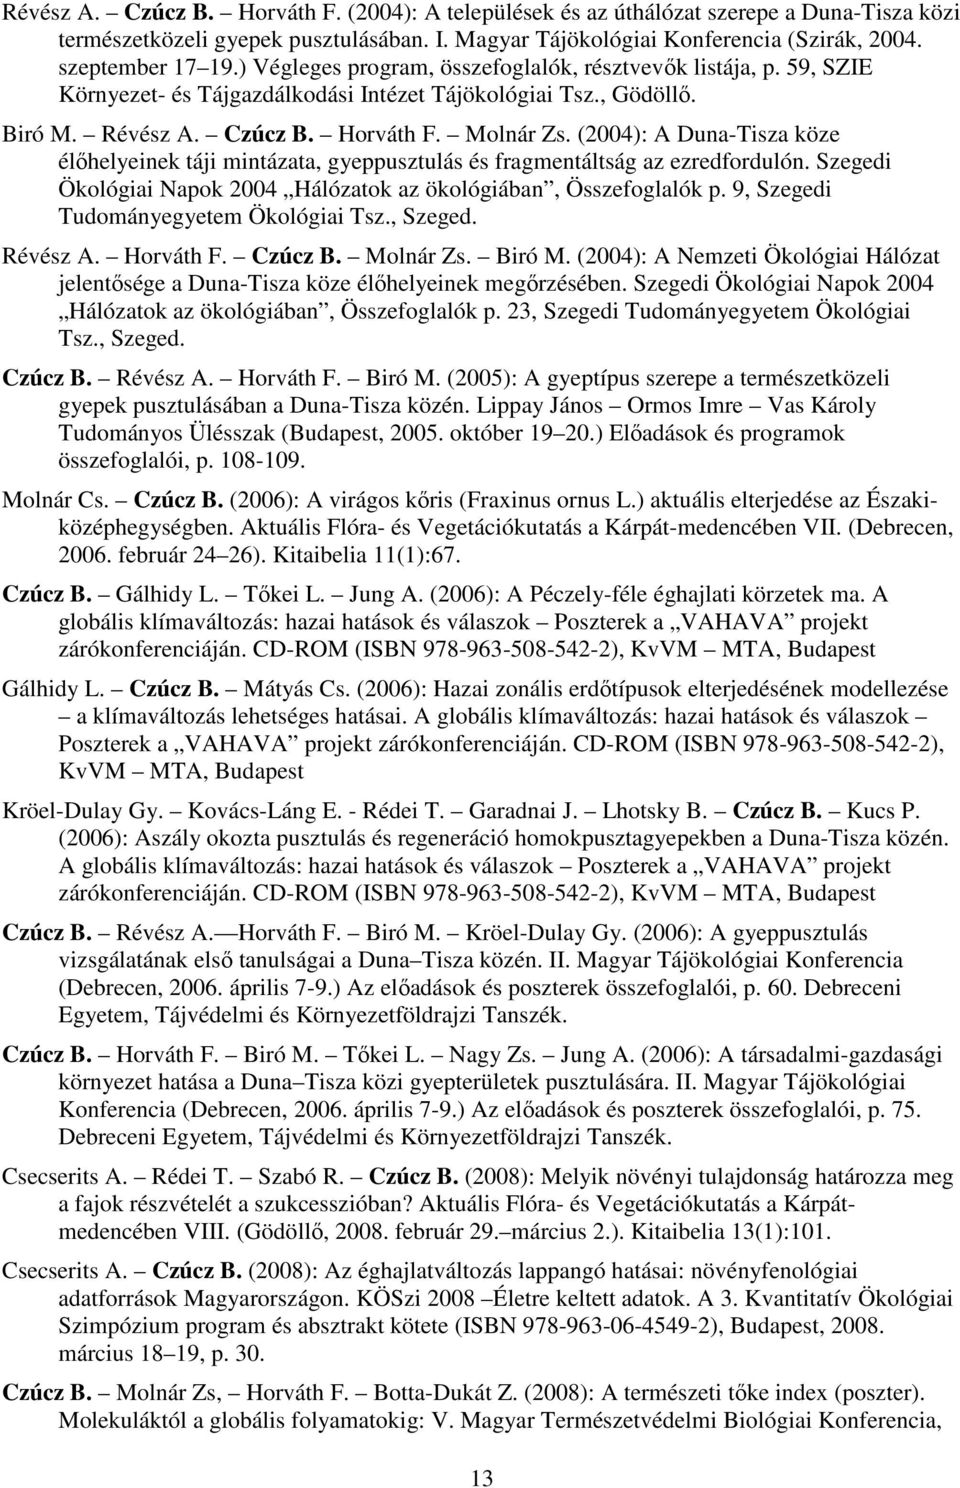 (2004): A Duna-Tisza köze élőhelyeinek táji mintázata, gyeppusztulás és fragmentáltság az ezredfordulón. Szegedi Ökológiai Napok 2004 Hálózatok az ökológiában, Összefoglalók p.